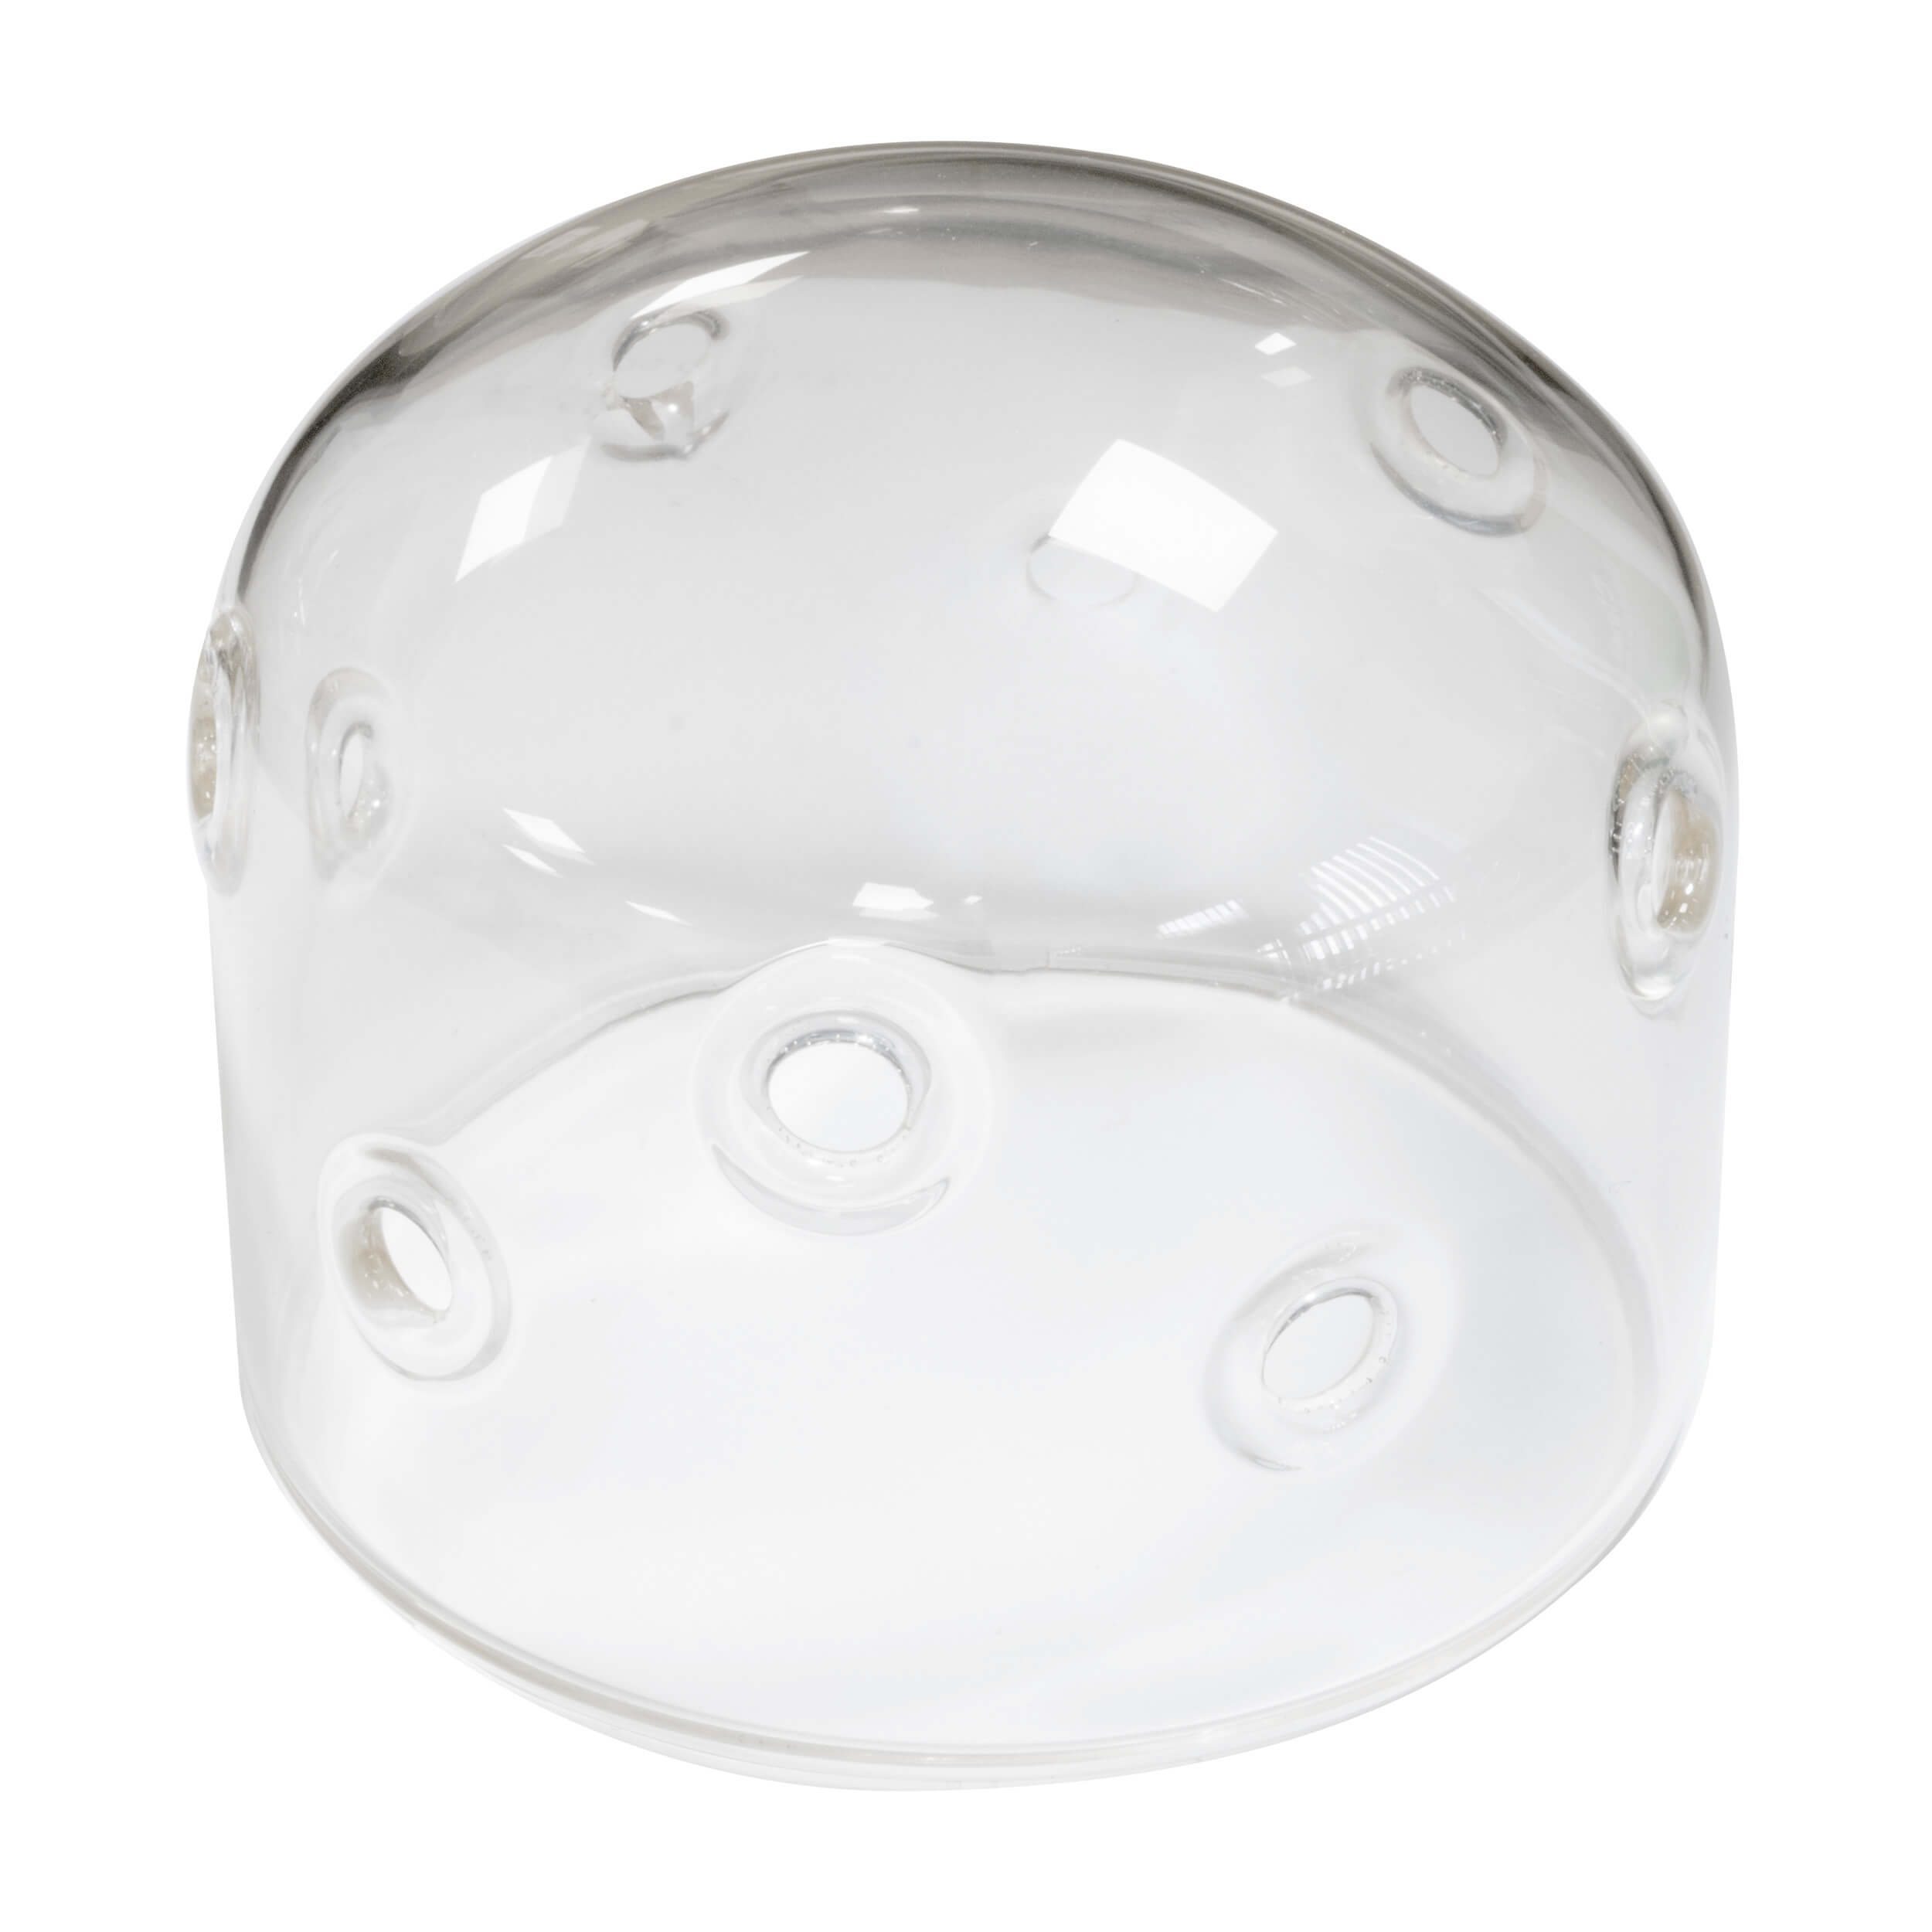 Replacement/Spare Glass Protection Dome CITI1200PRO / Godox AD1200PRO